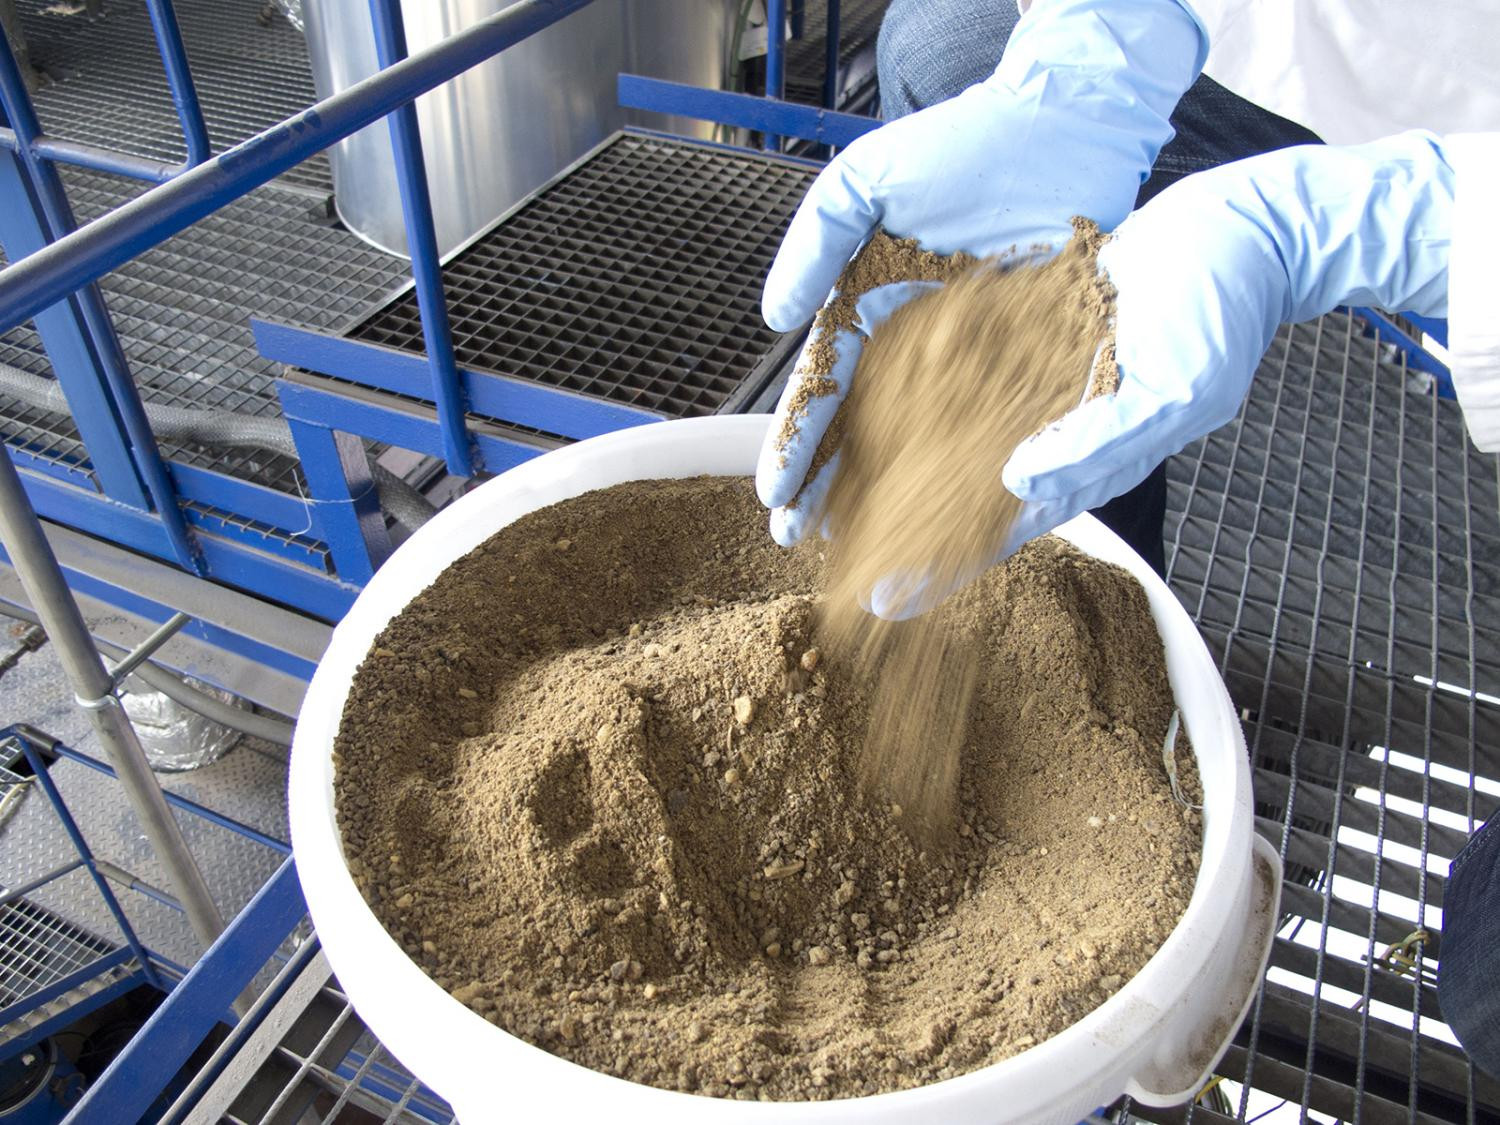 20 тысяч тонн биопротеина сможет вырабатывать новый завод кормового белка в Воронеже